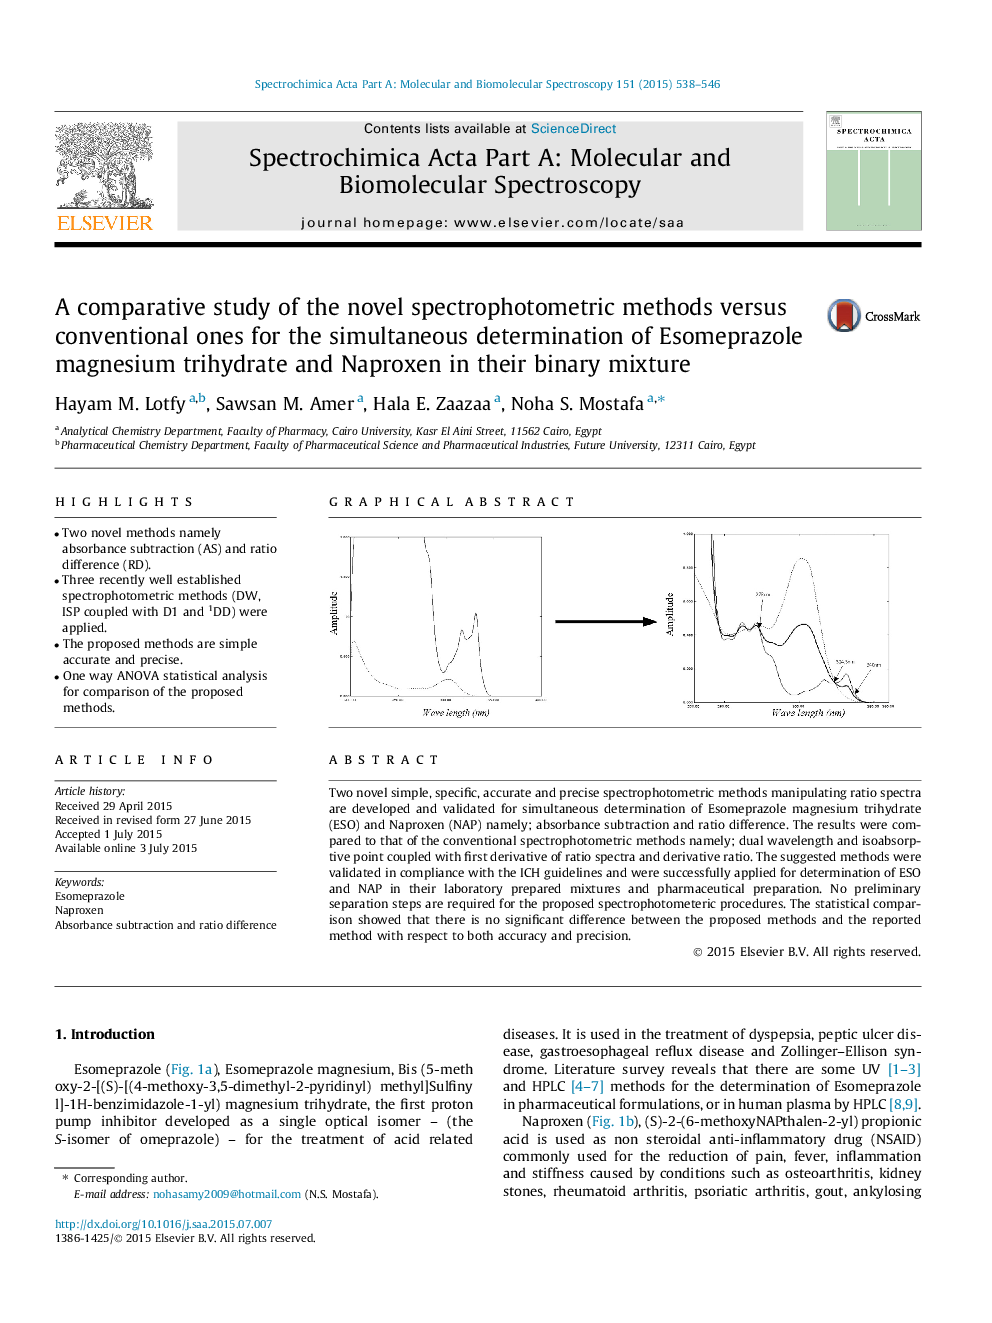 بررسی مقایسه ای روش های جدید اسپکتروفتومتری در مقایسه با روش های معمول برای تعیین همزمان تری هیدرات اسموپرازول منیزیم و ناپروکسن در ترکیب دوتایی آنها 